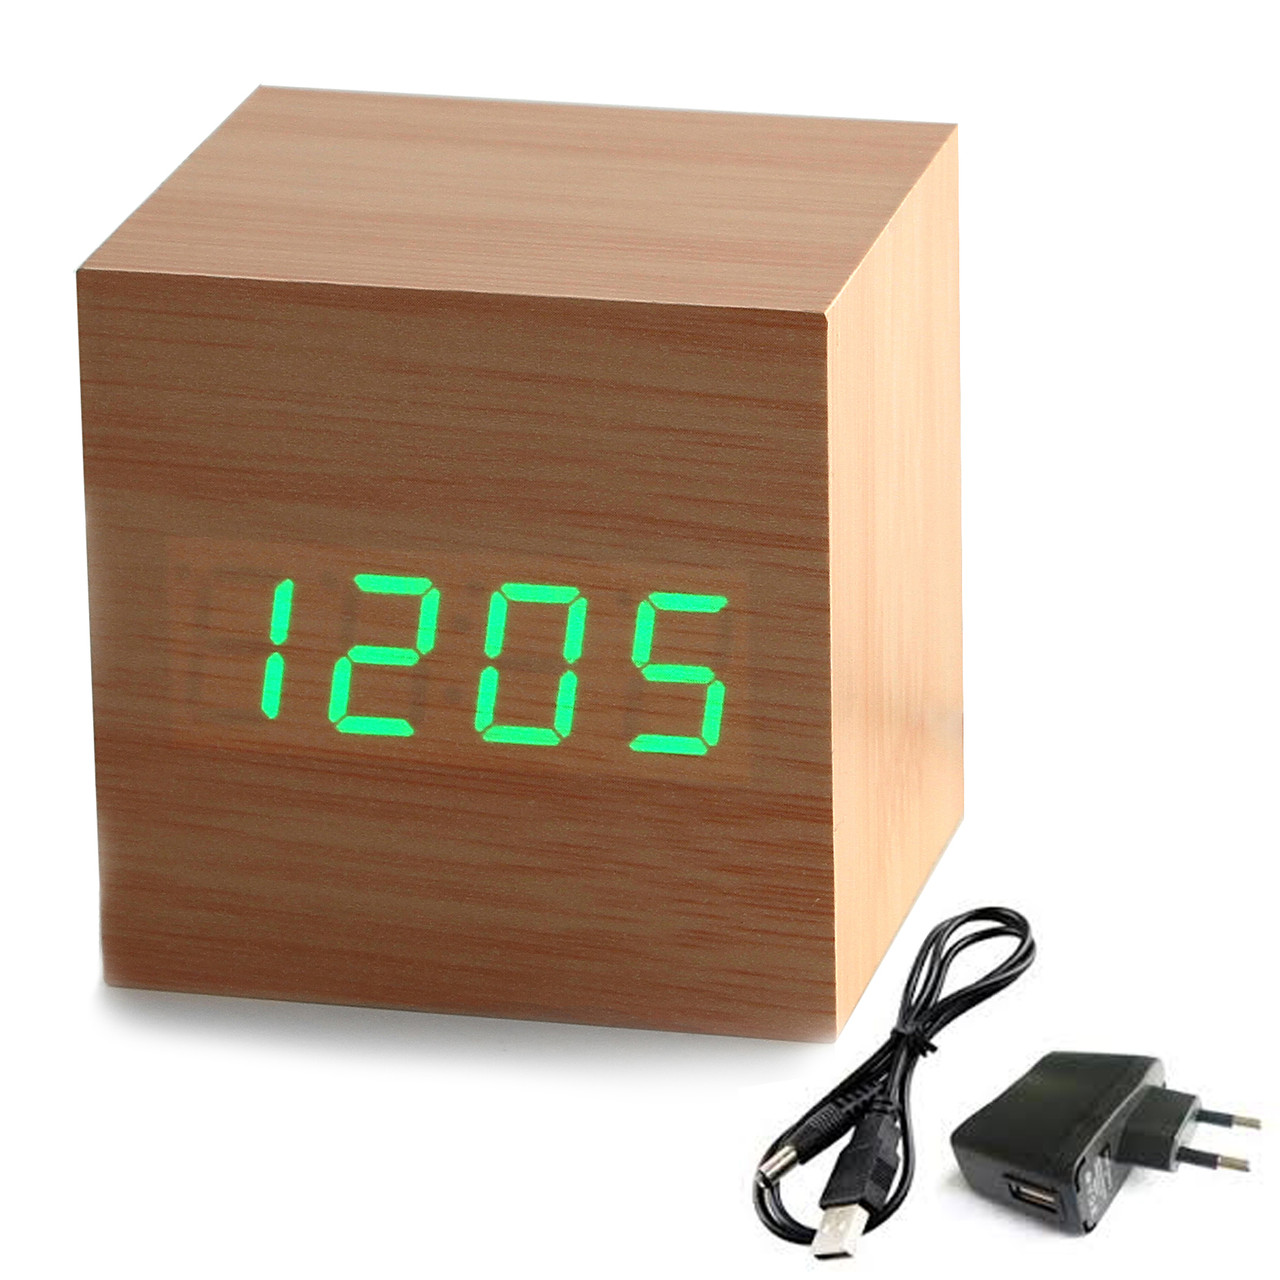 

Часы будильник UFT wood clock green оригинальный подарок прикольный